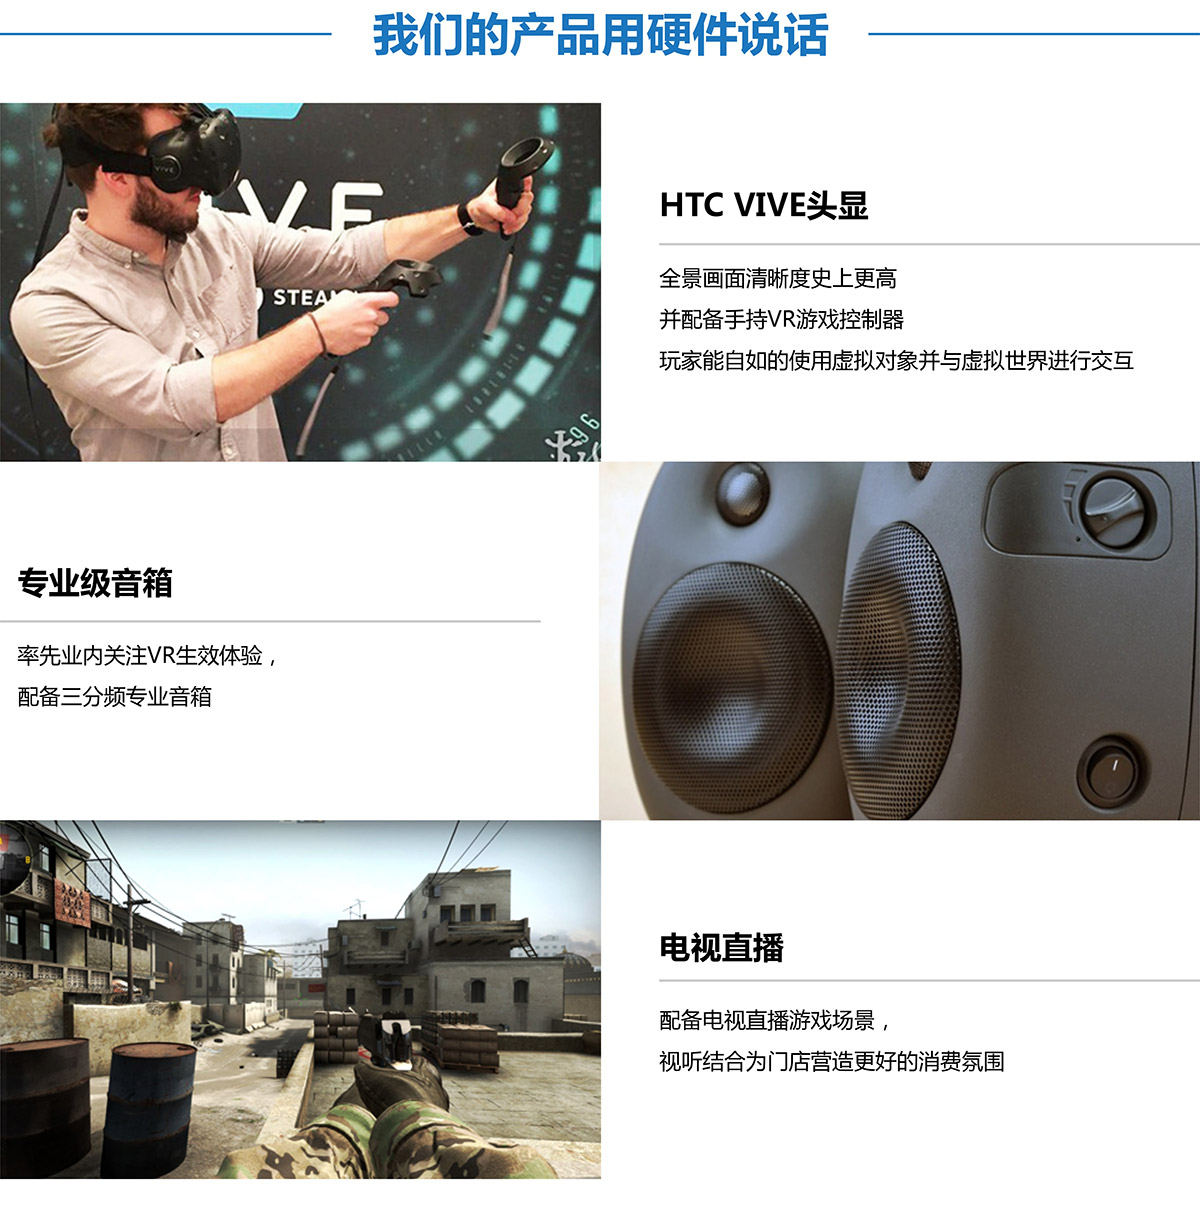 防灾减灾VR探索用硬件说话.jpg